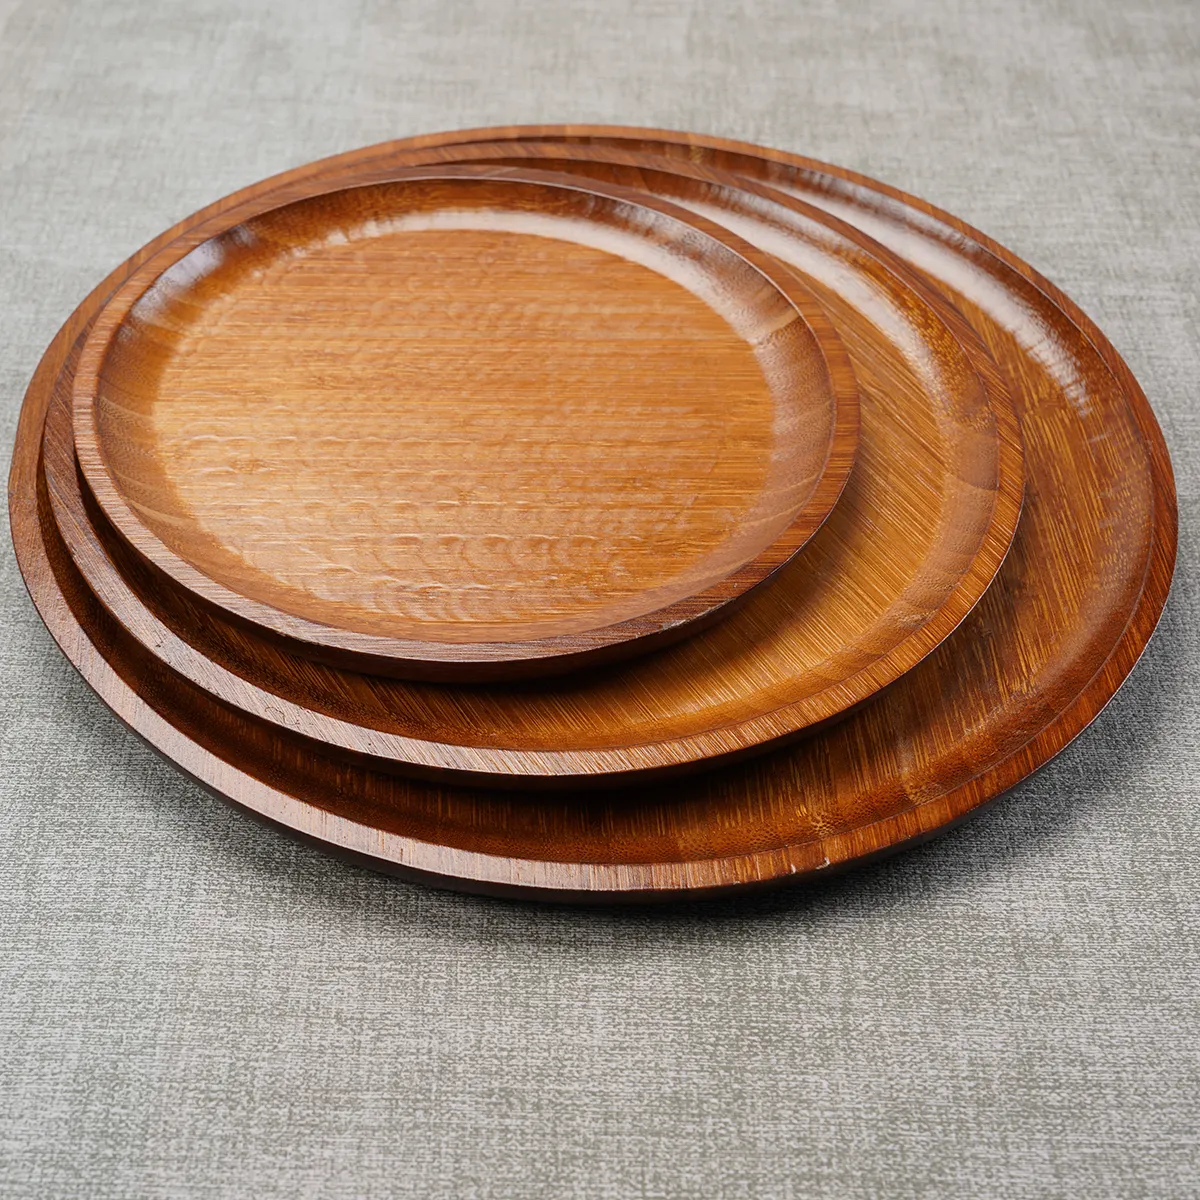 Кухонный Ресторан Однослойная деревянная обеденная тарелка круглый бамбуковый поднос для завтрака